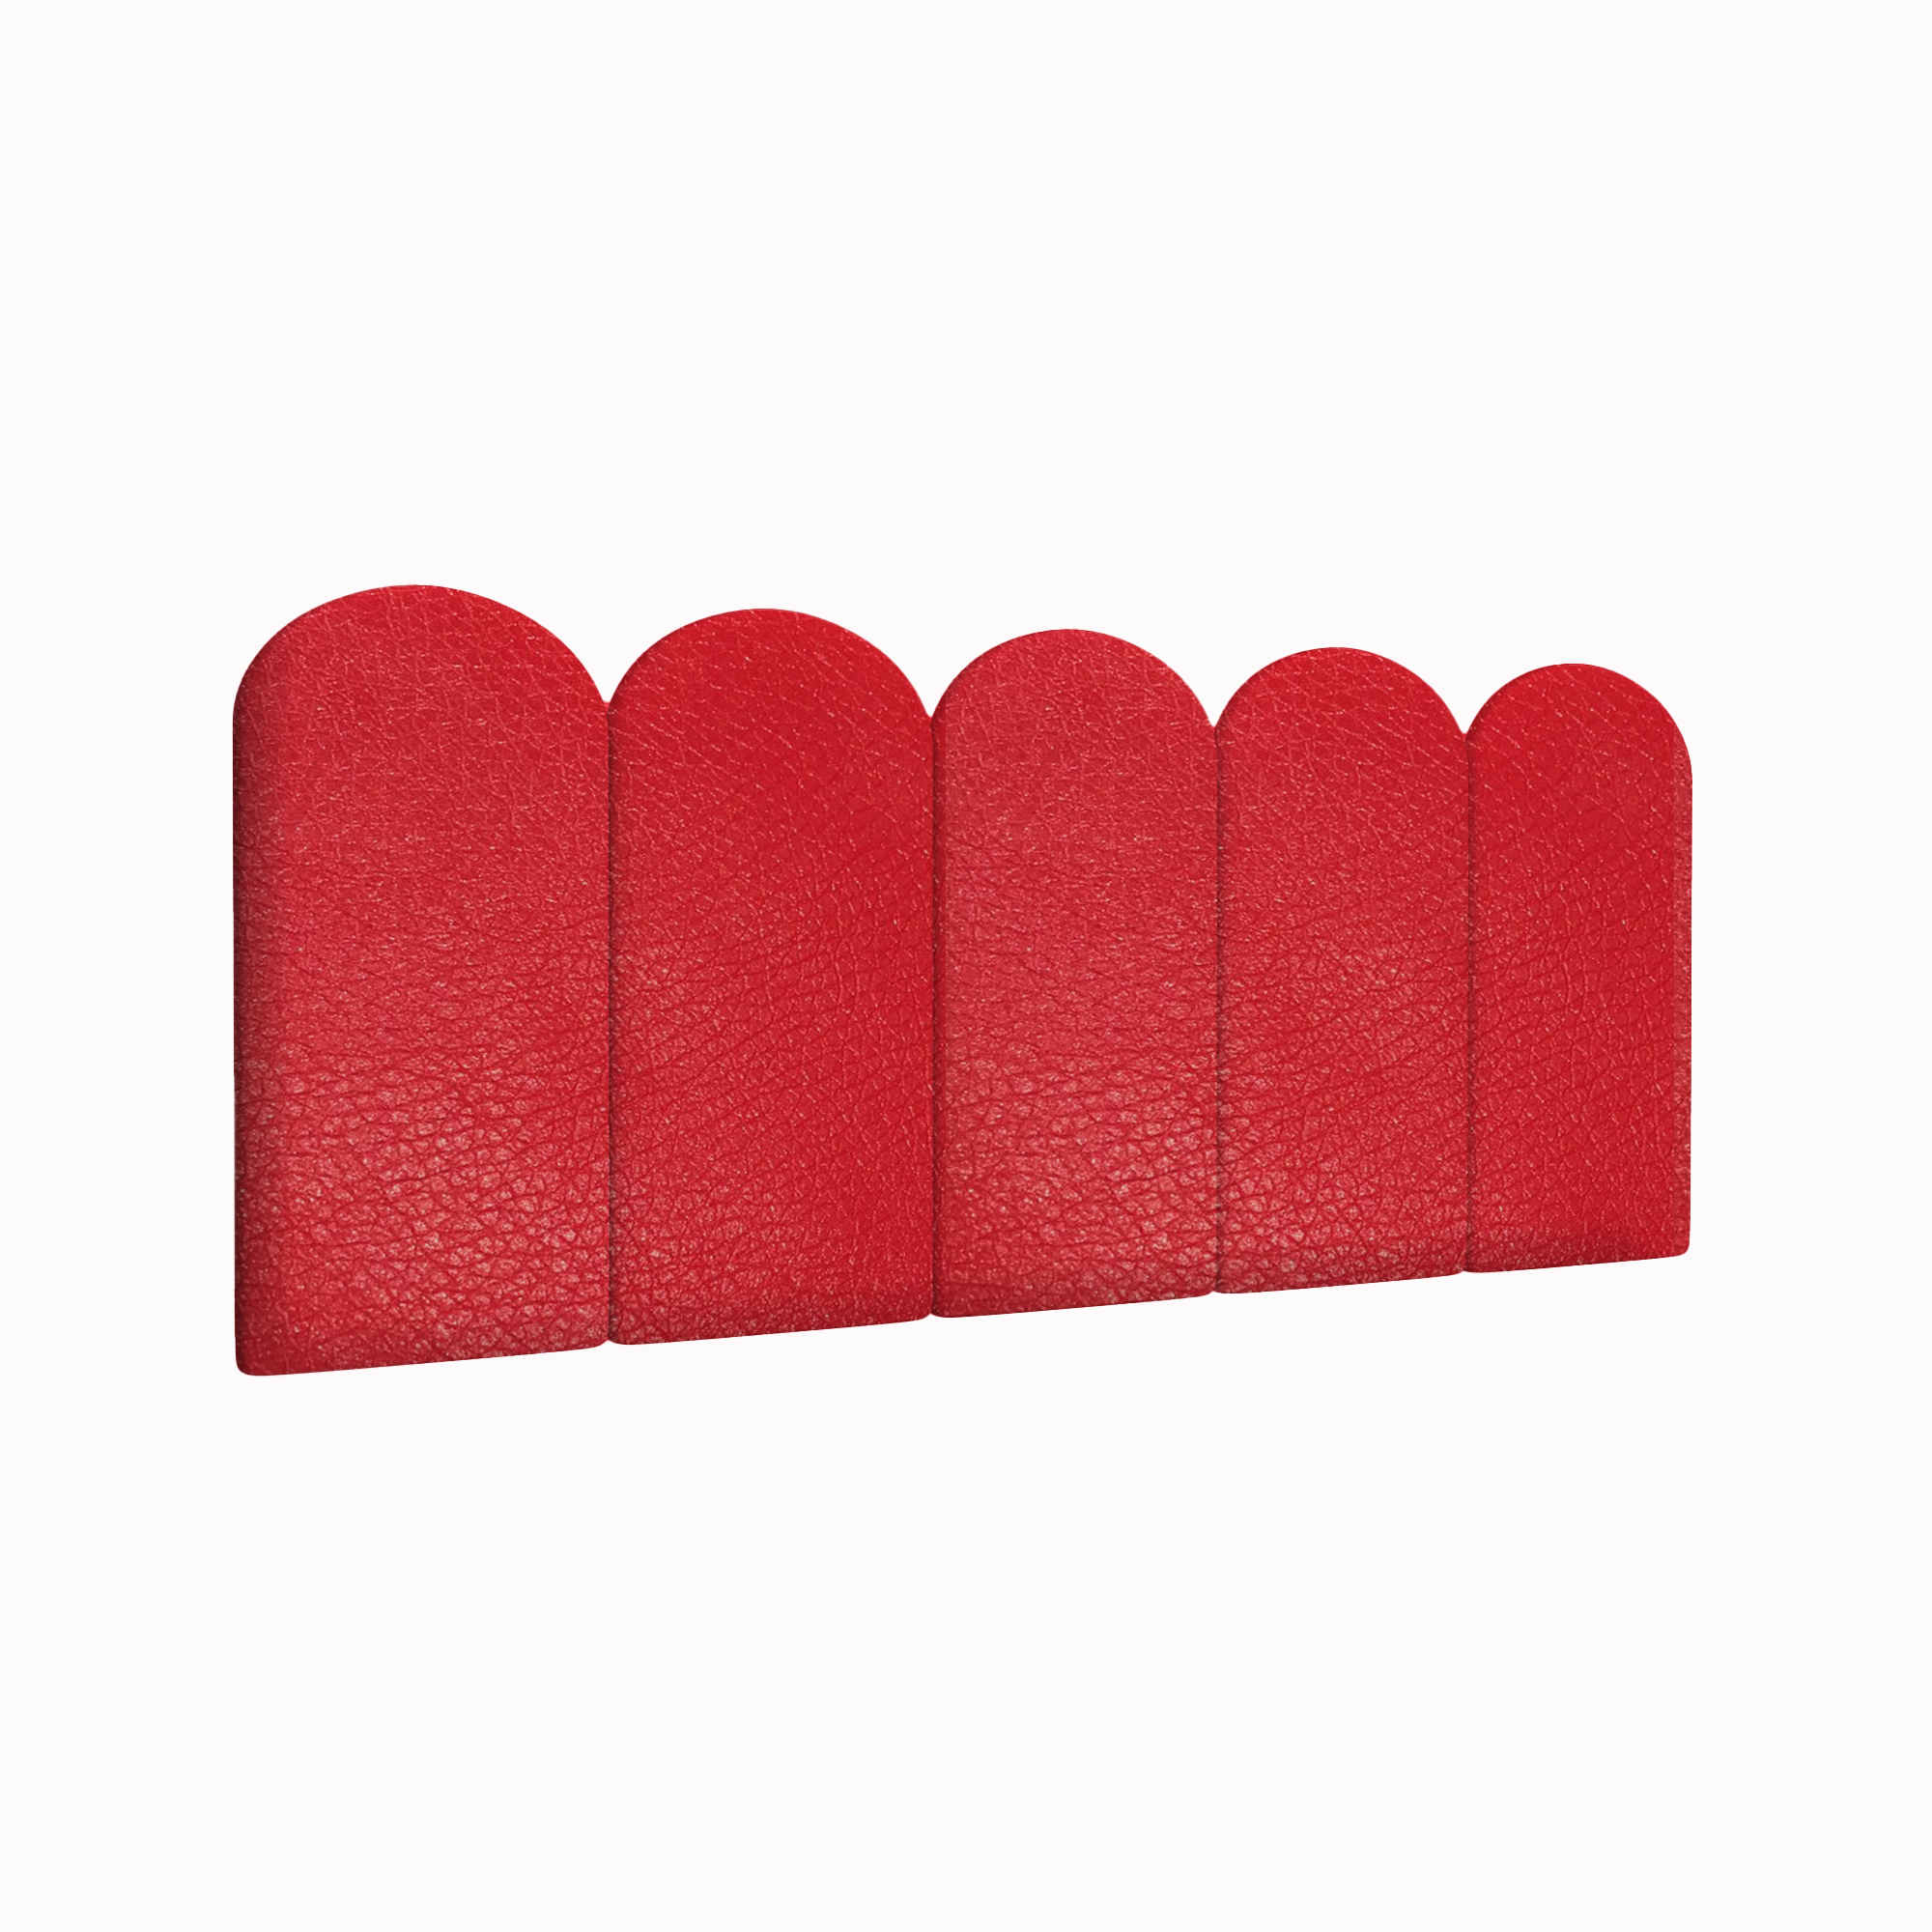 Мягкие обои Eco Leather Red 30х60R см 4 шт. мягкие кубики плюшики весёлая азбука